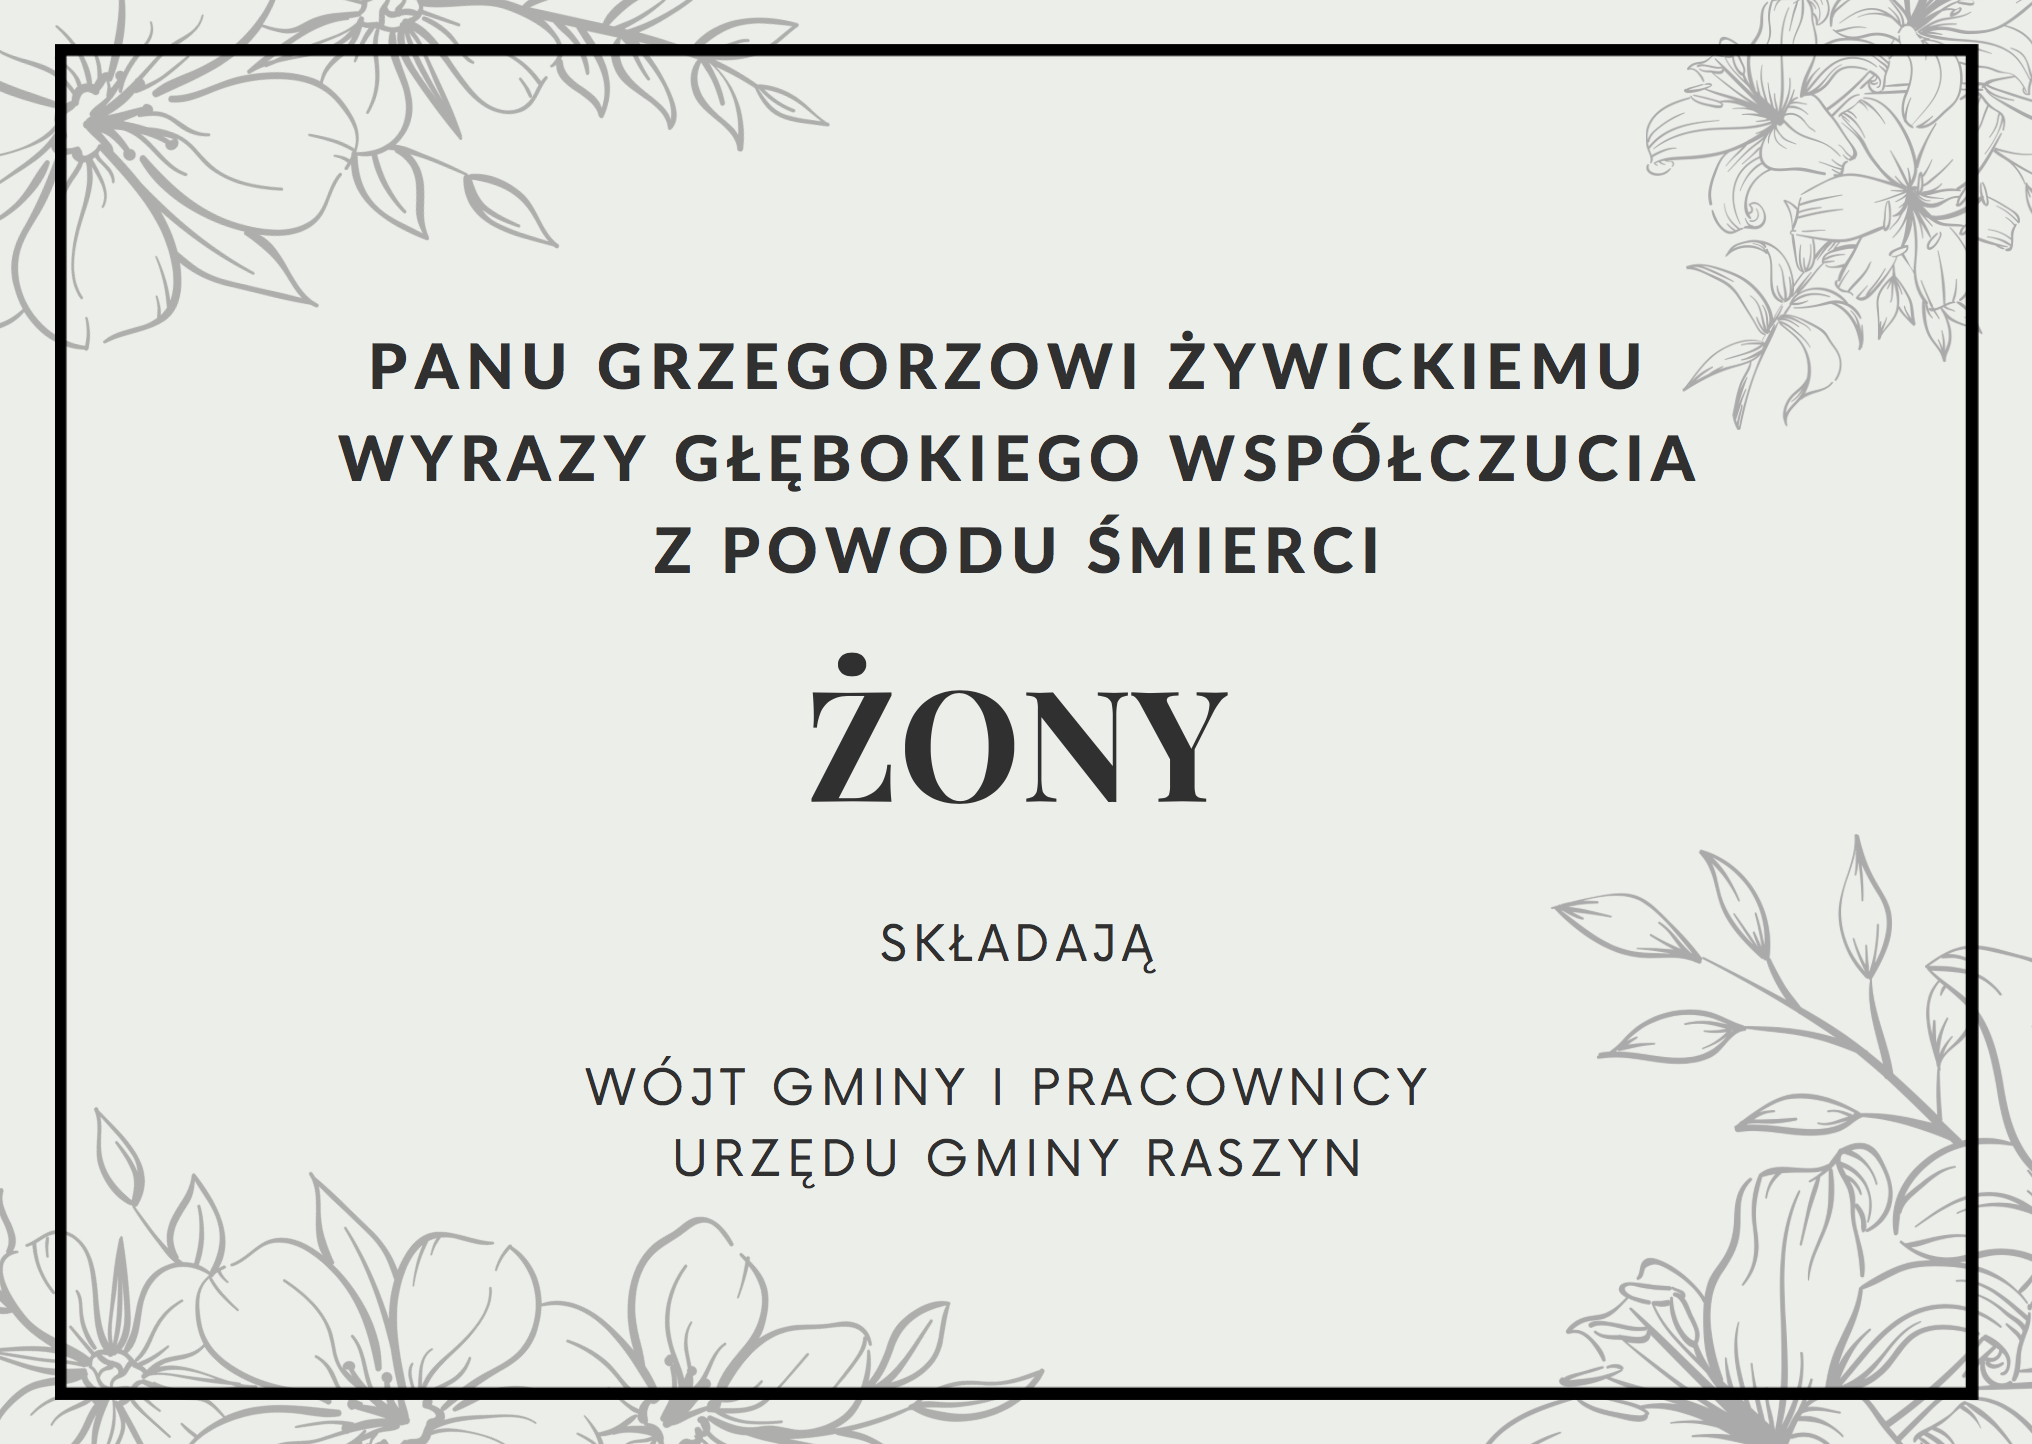 Z głębokim smutkiem przyjeliśmy wieść o śmierci Pani Anny, żony Pana Grzegorza Żywickiego